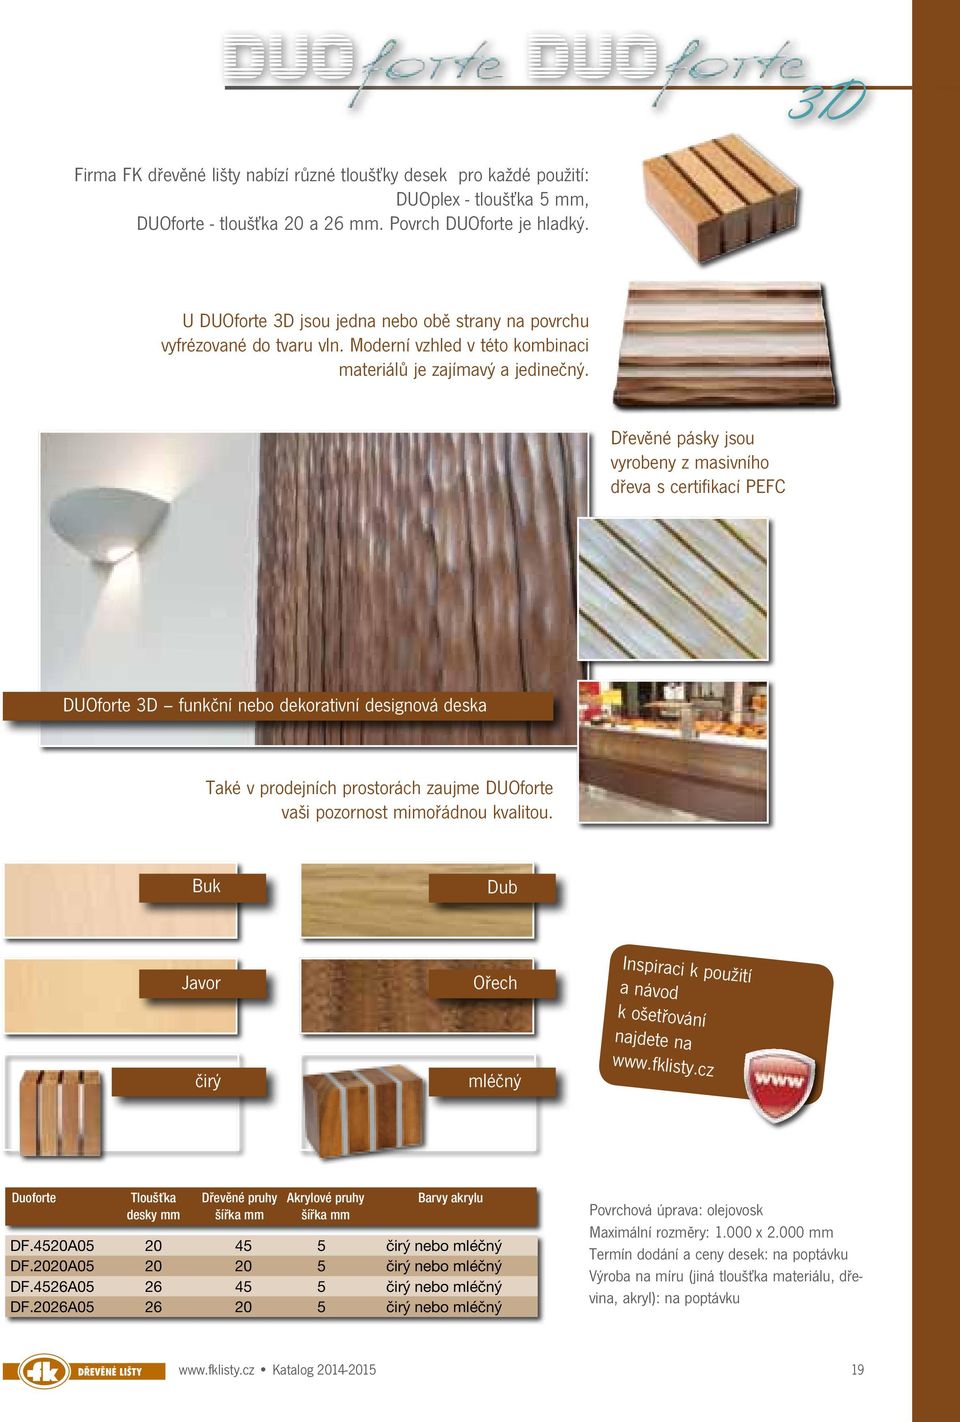 Dřevěné pásky jsou vyrobeny z masivního dřeva s certifikací PEFC DUOforte 3D funkční nebo dekorativní designová deska Také v prodejních prostorách zaujme DUOforte vaši pozornost mimořádnou kvalitou.